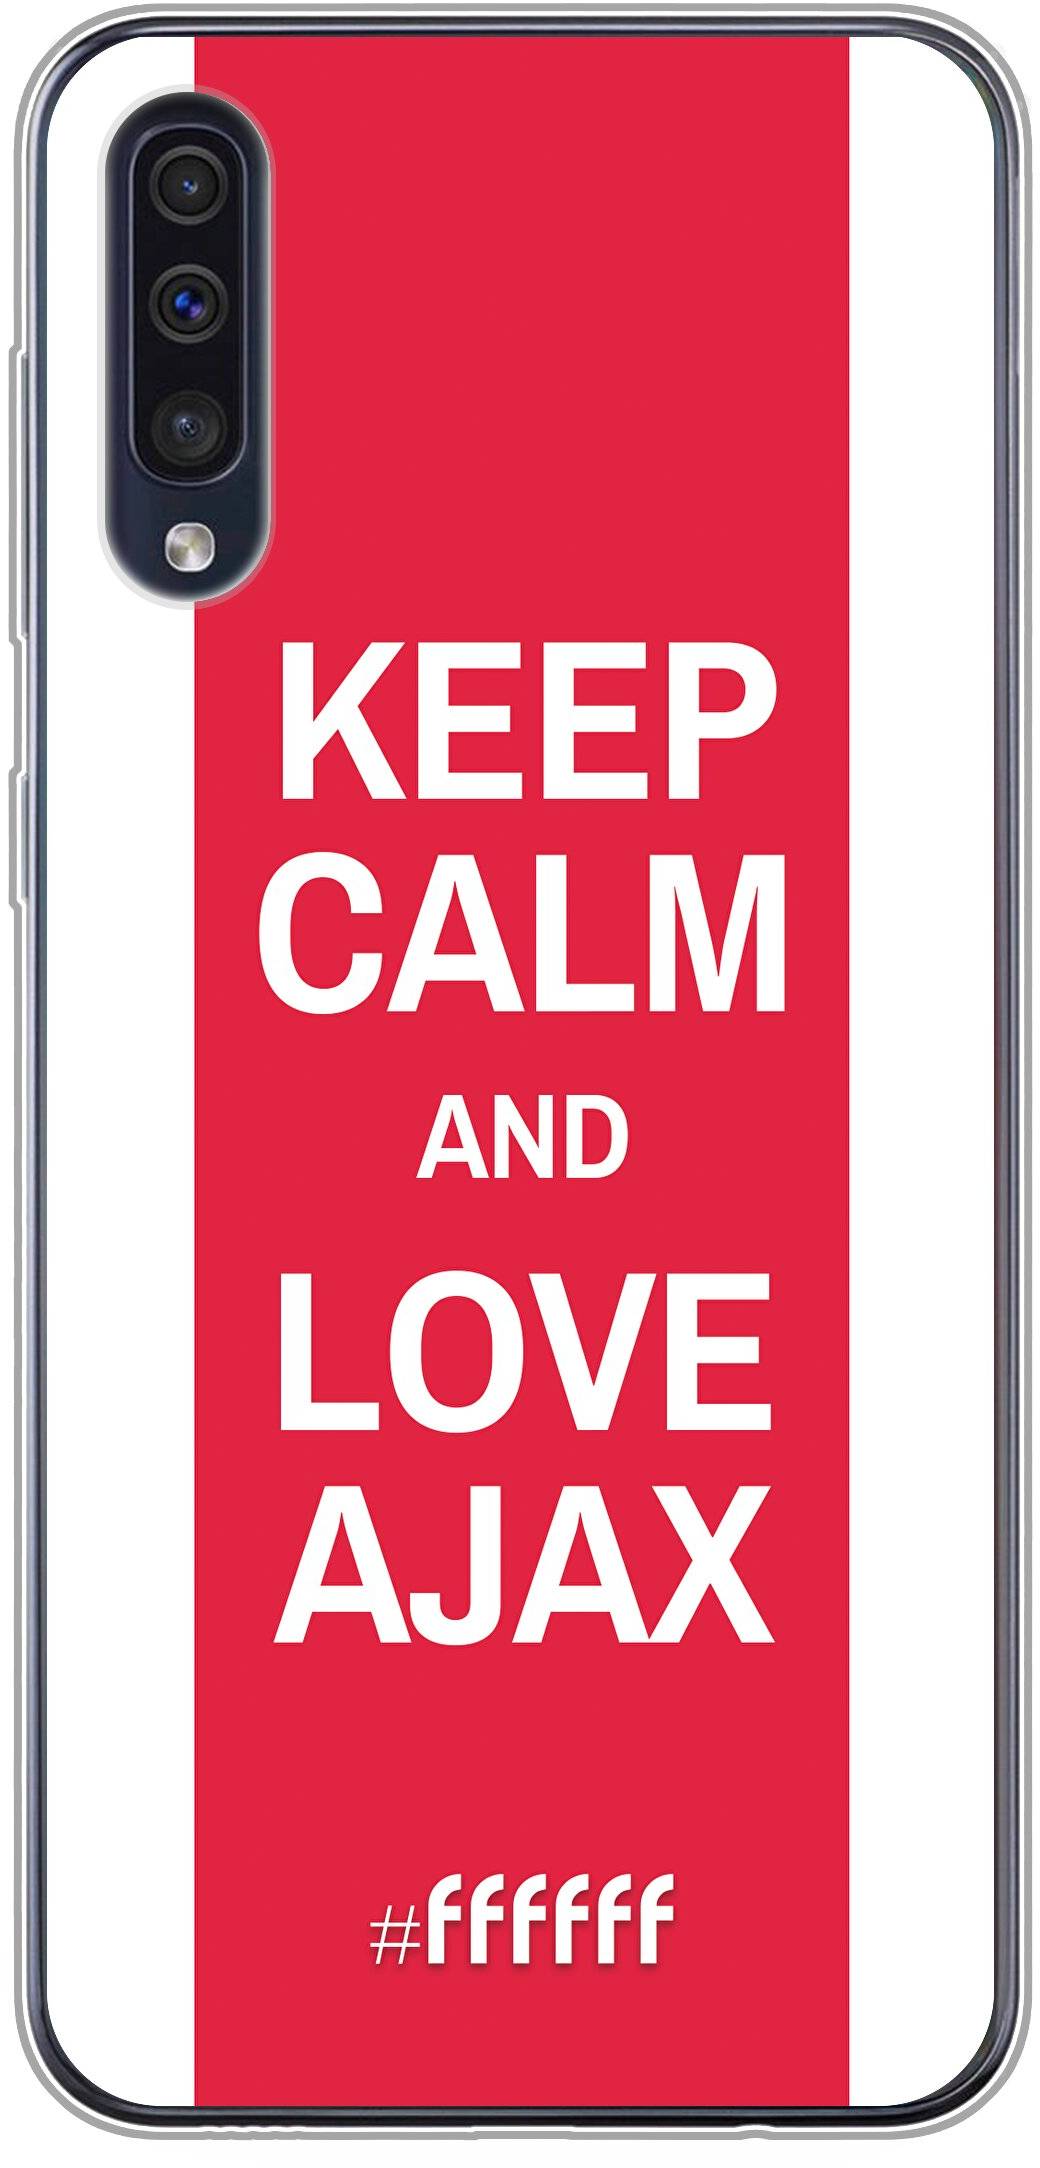 AFC Ajax Keep Calm Galaxy A30s